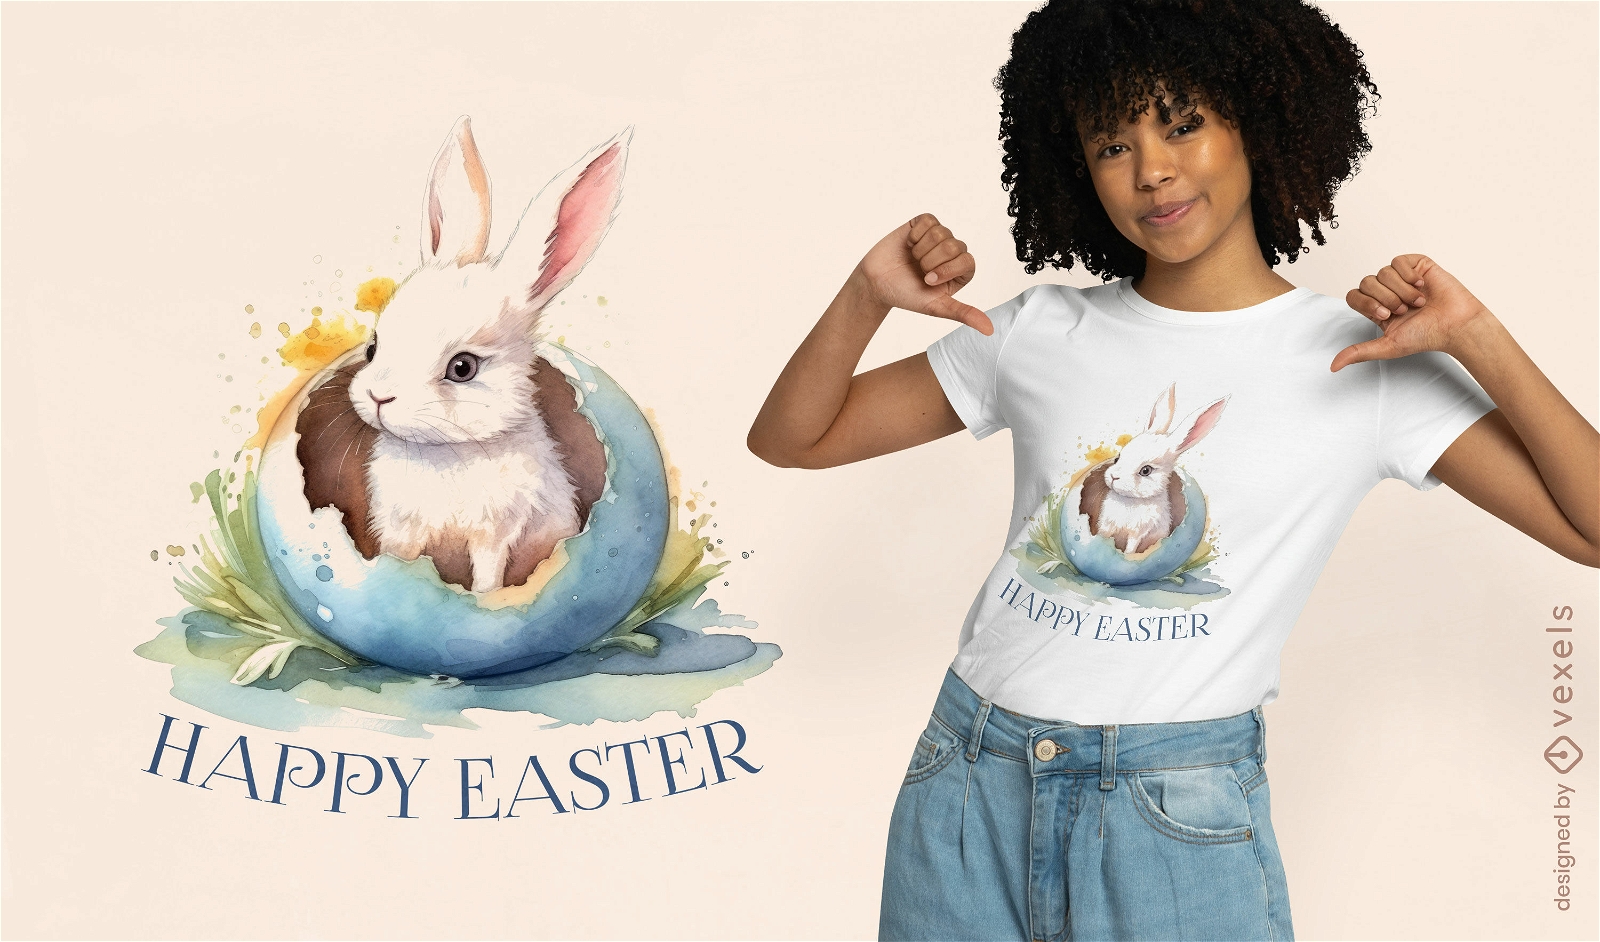 Festive Easter bunny t-shirt design